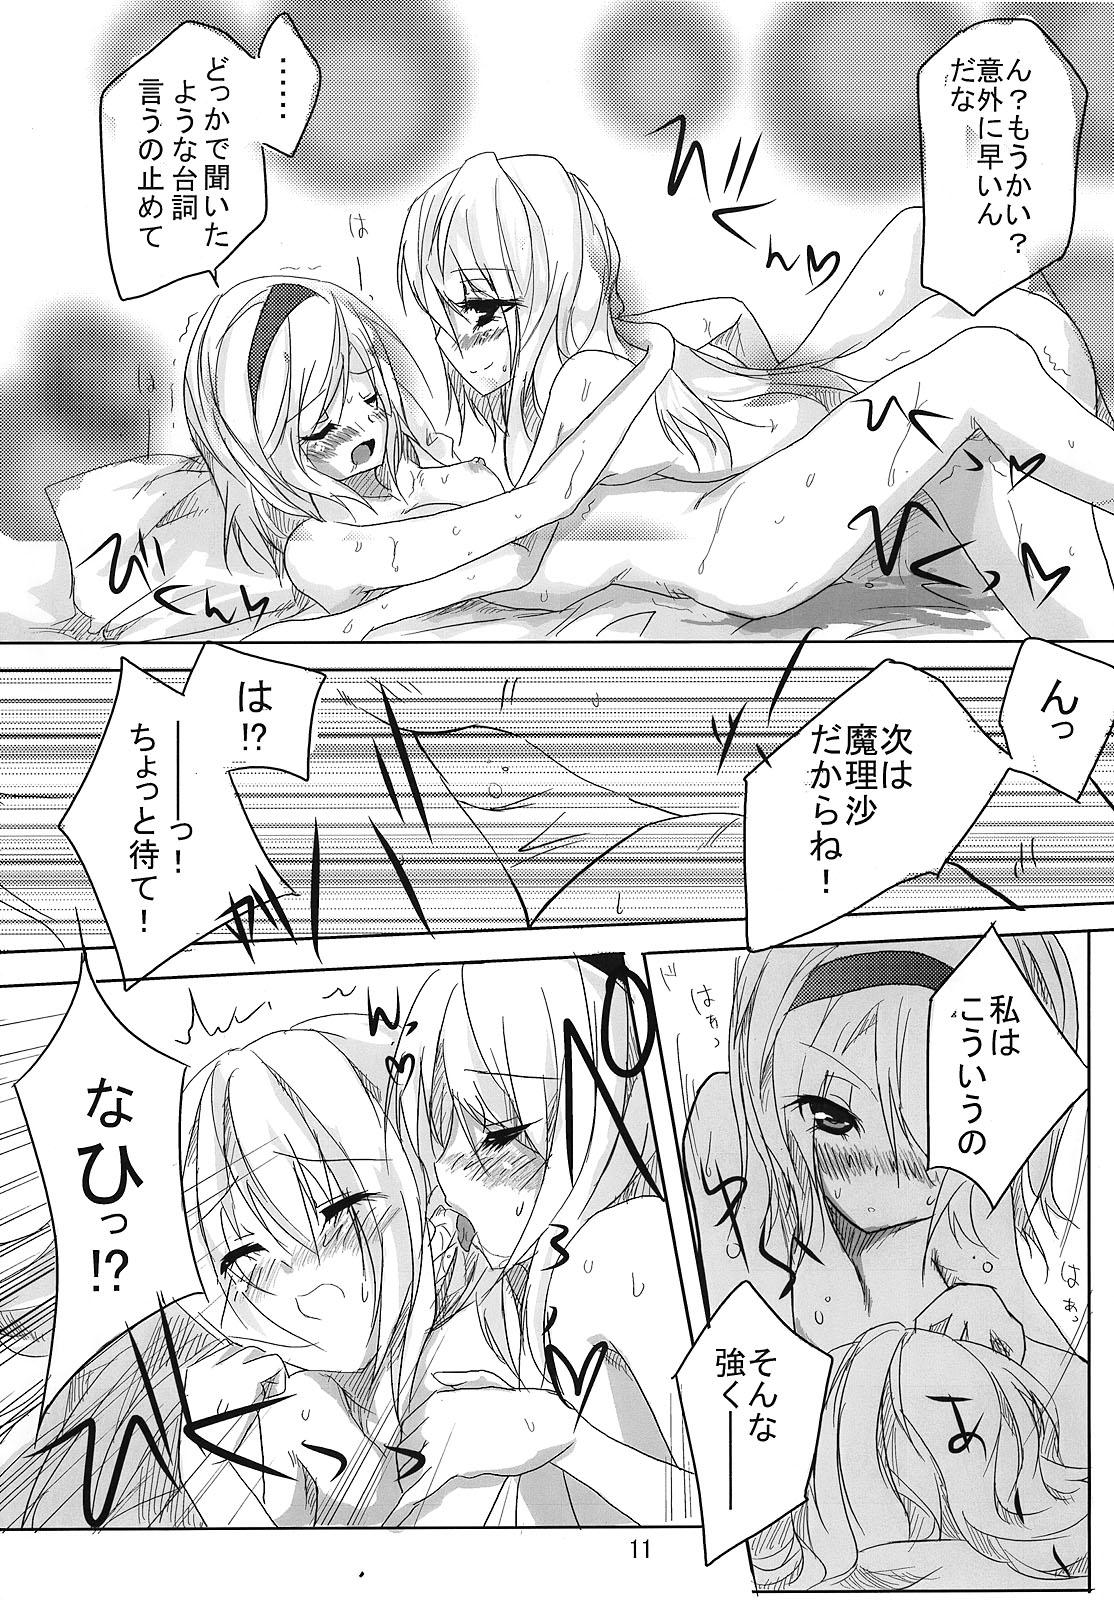 RAN × Yukari AND Alice × Marisa 9